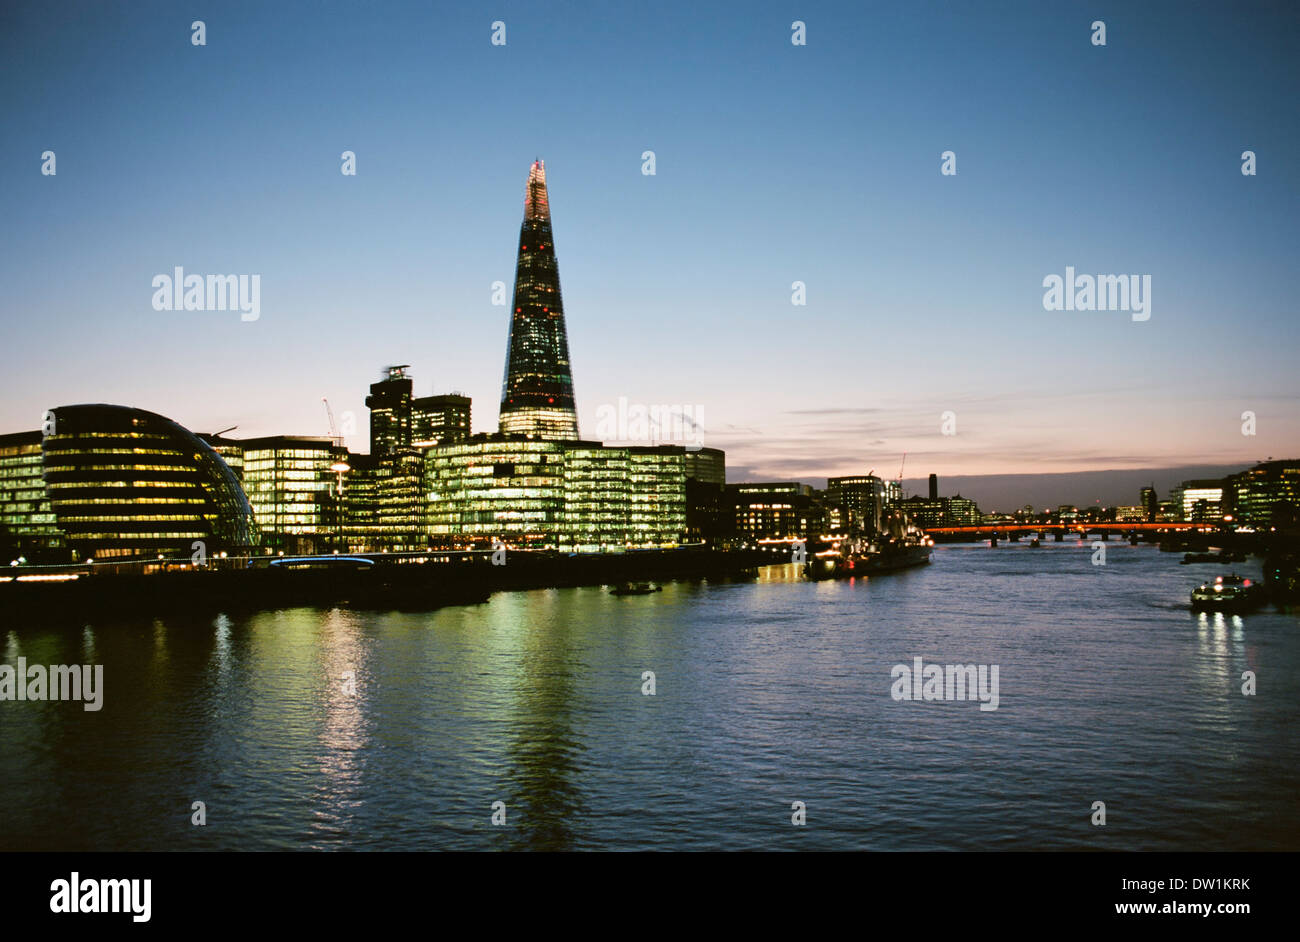 La riva sud del fiume Tamigi in serata, Londra UK, con la Shard Foto Stock